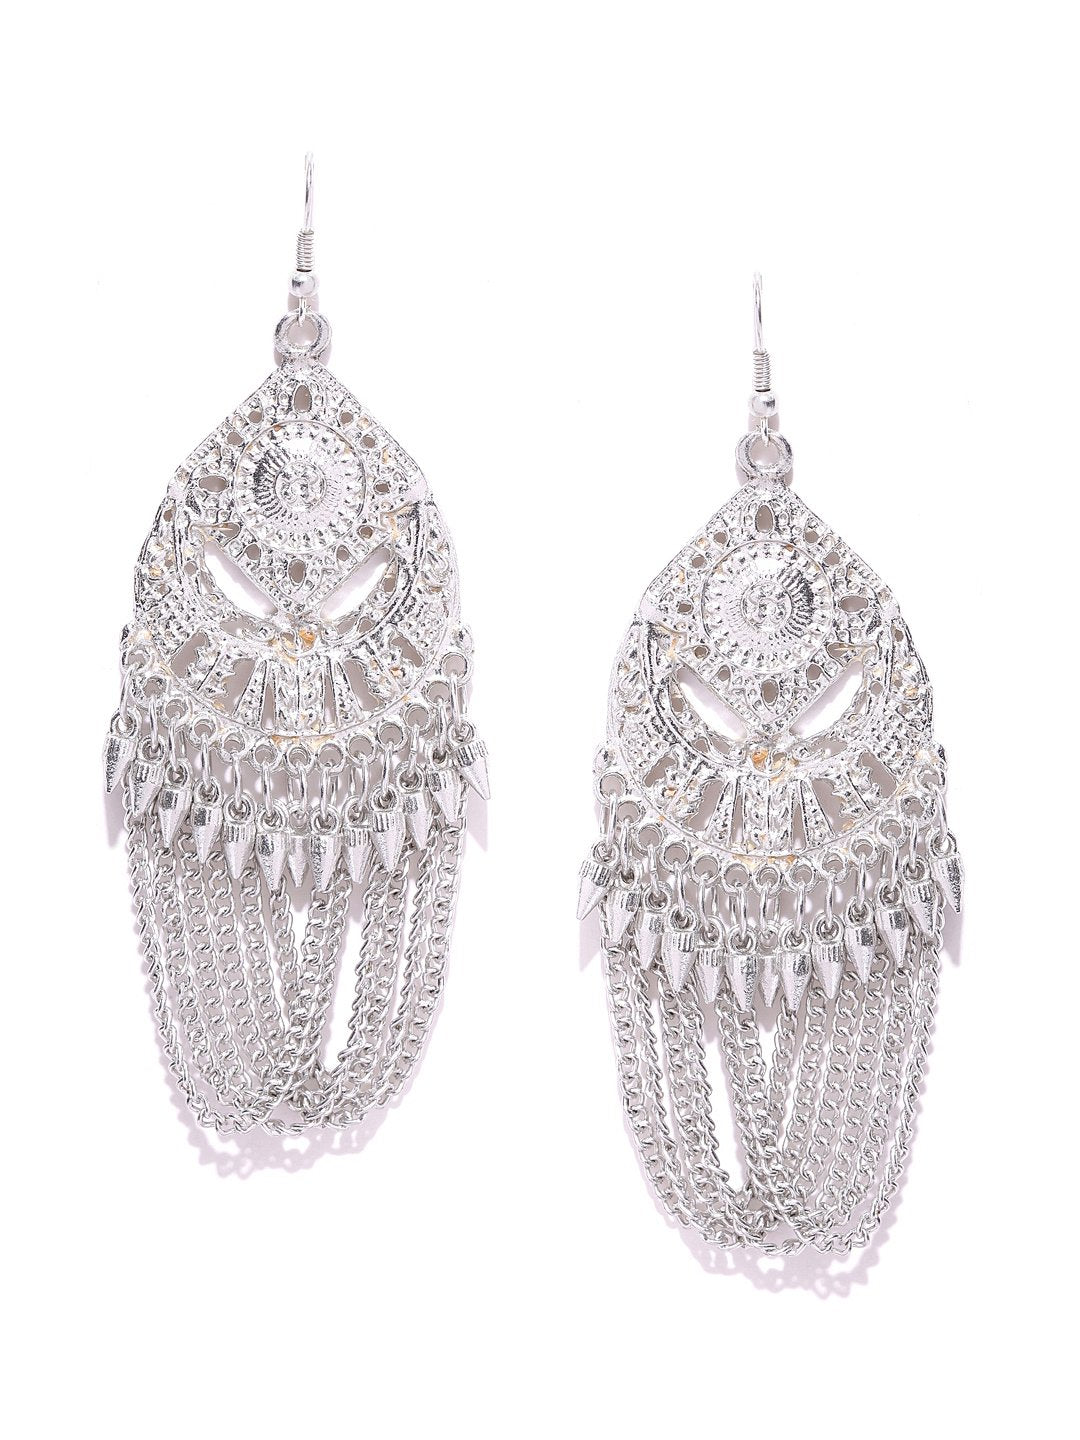 Silver toned drop earrings